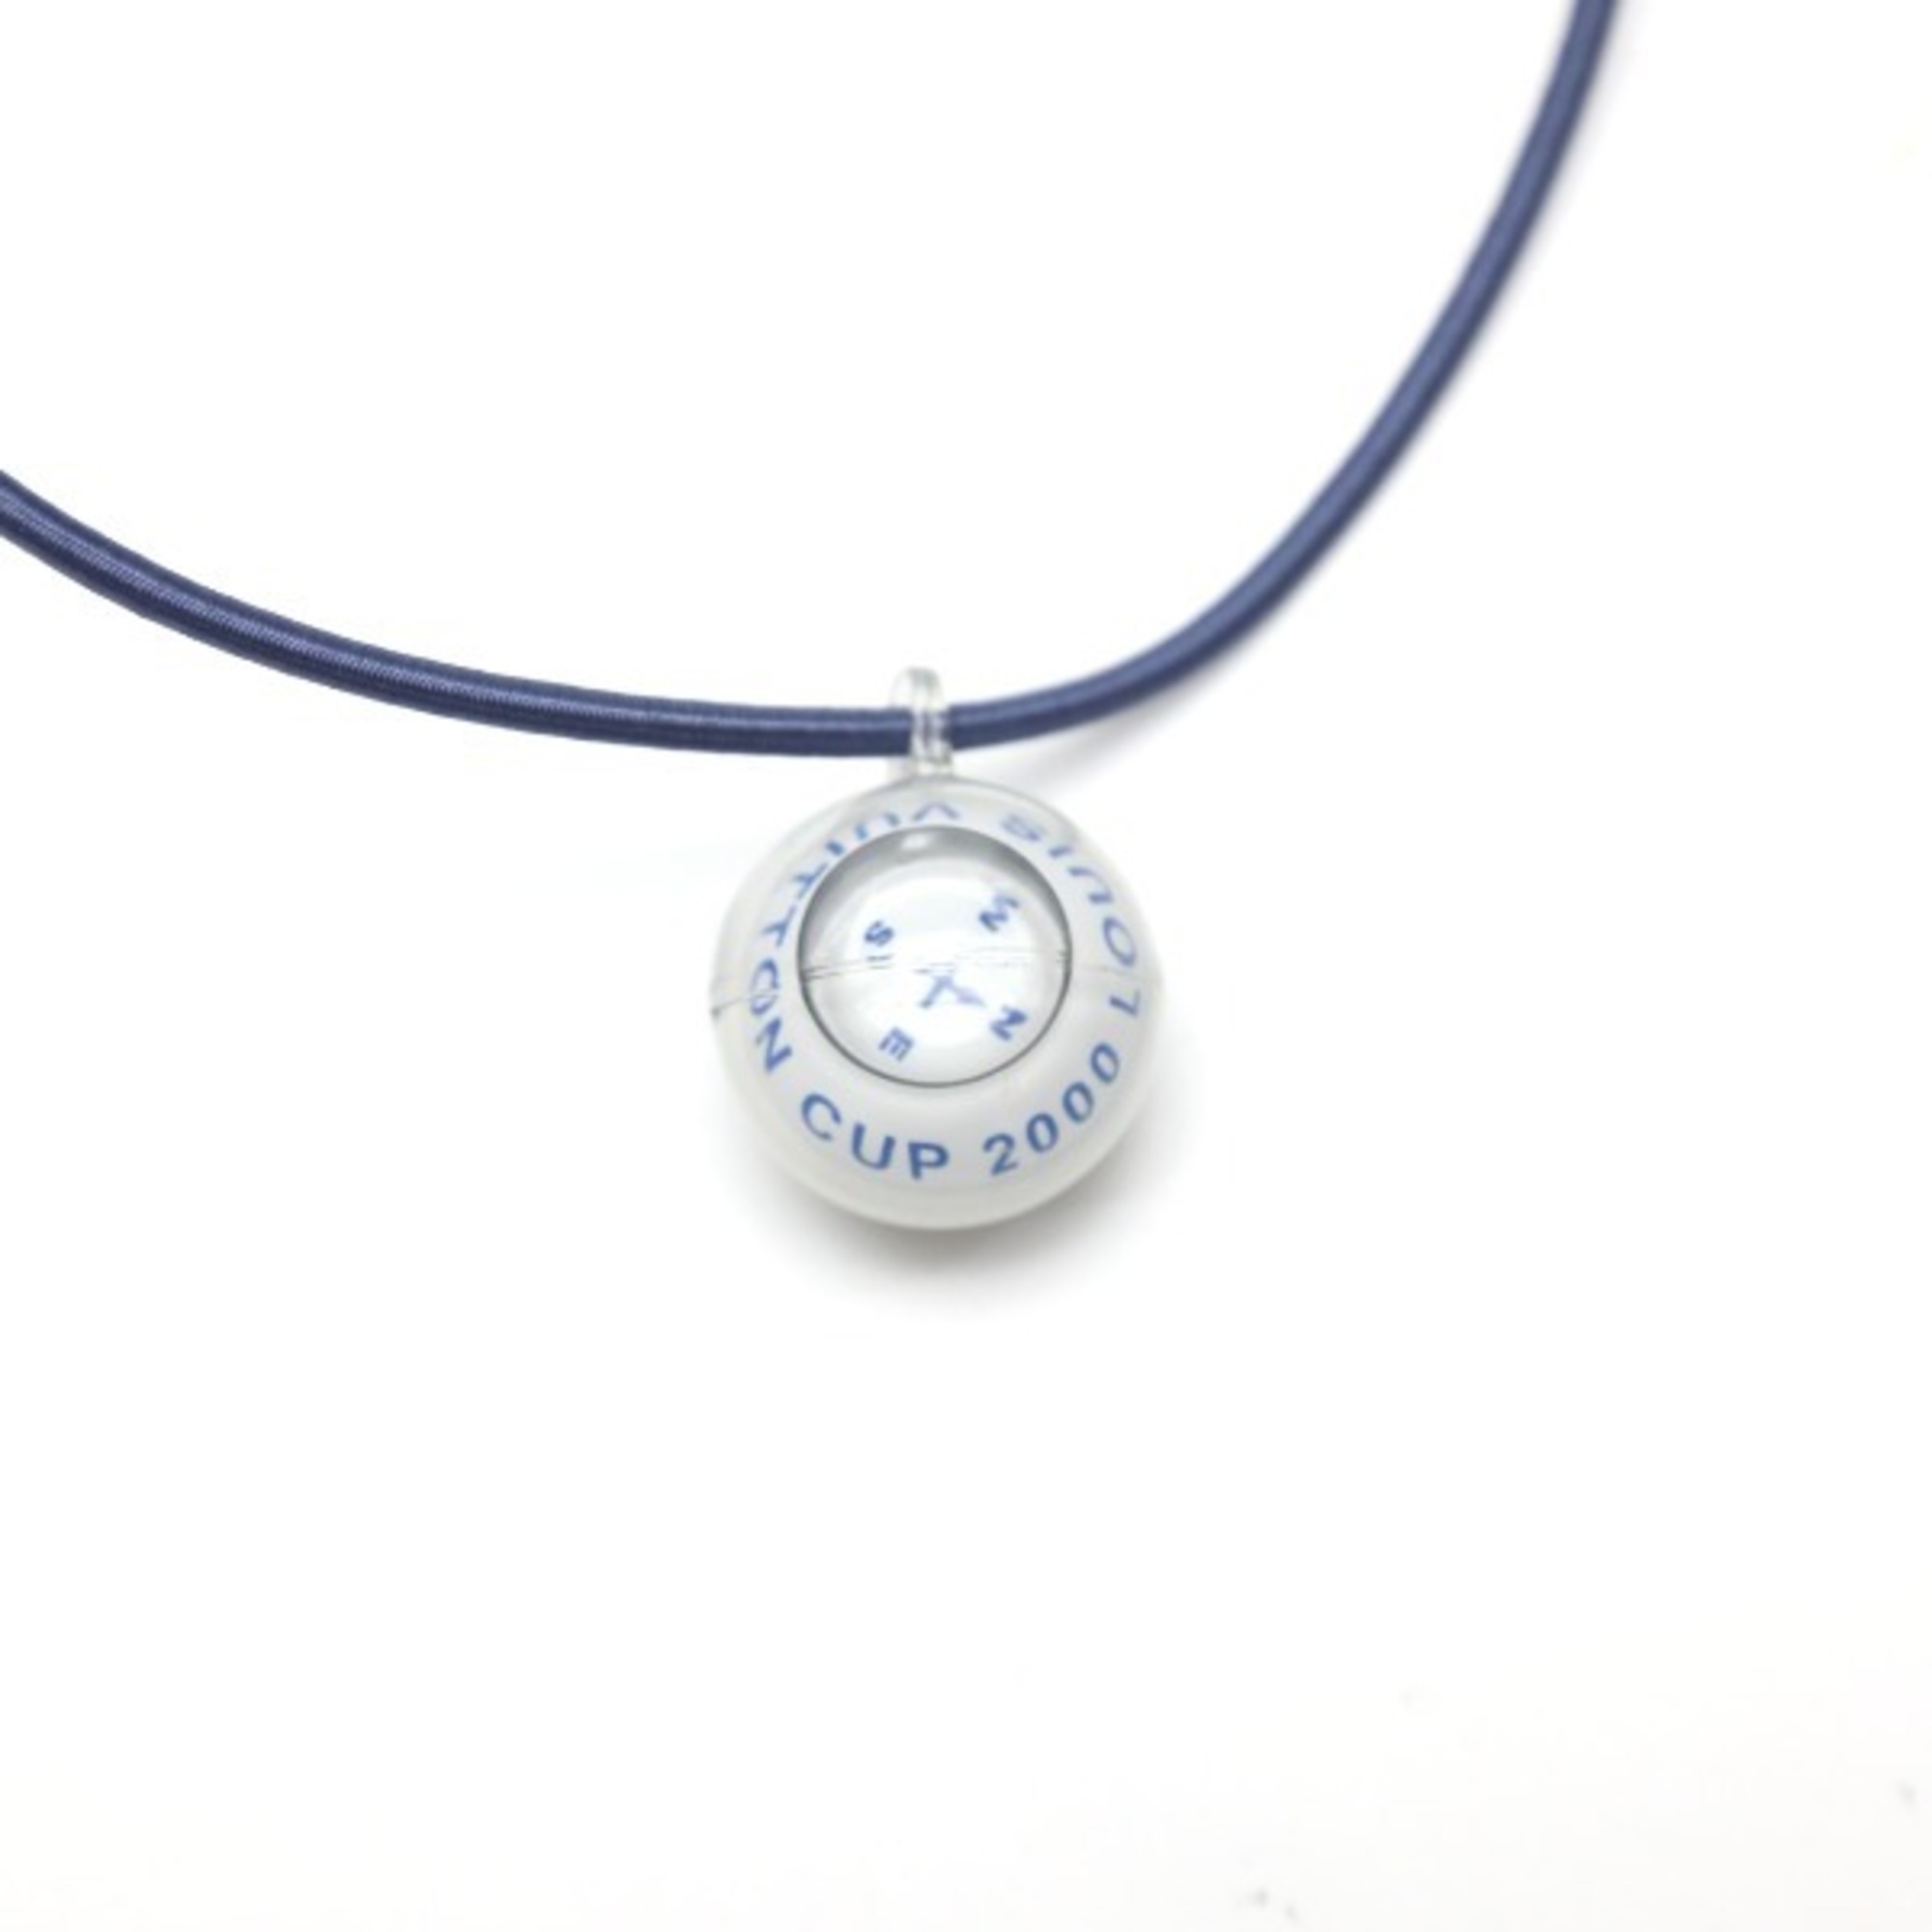 LOUIS VUITTON Necklace Cup Compass Pendant Choker Louis Vuitton Blue LV